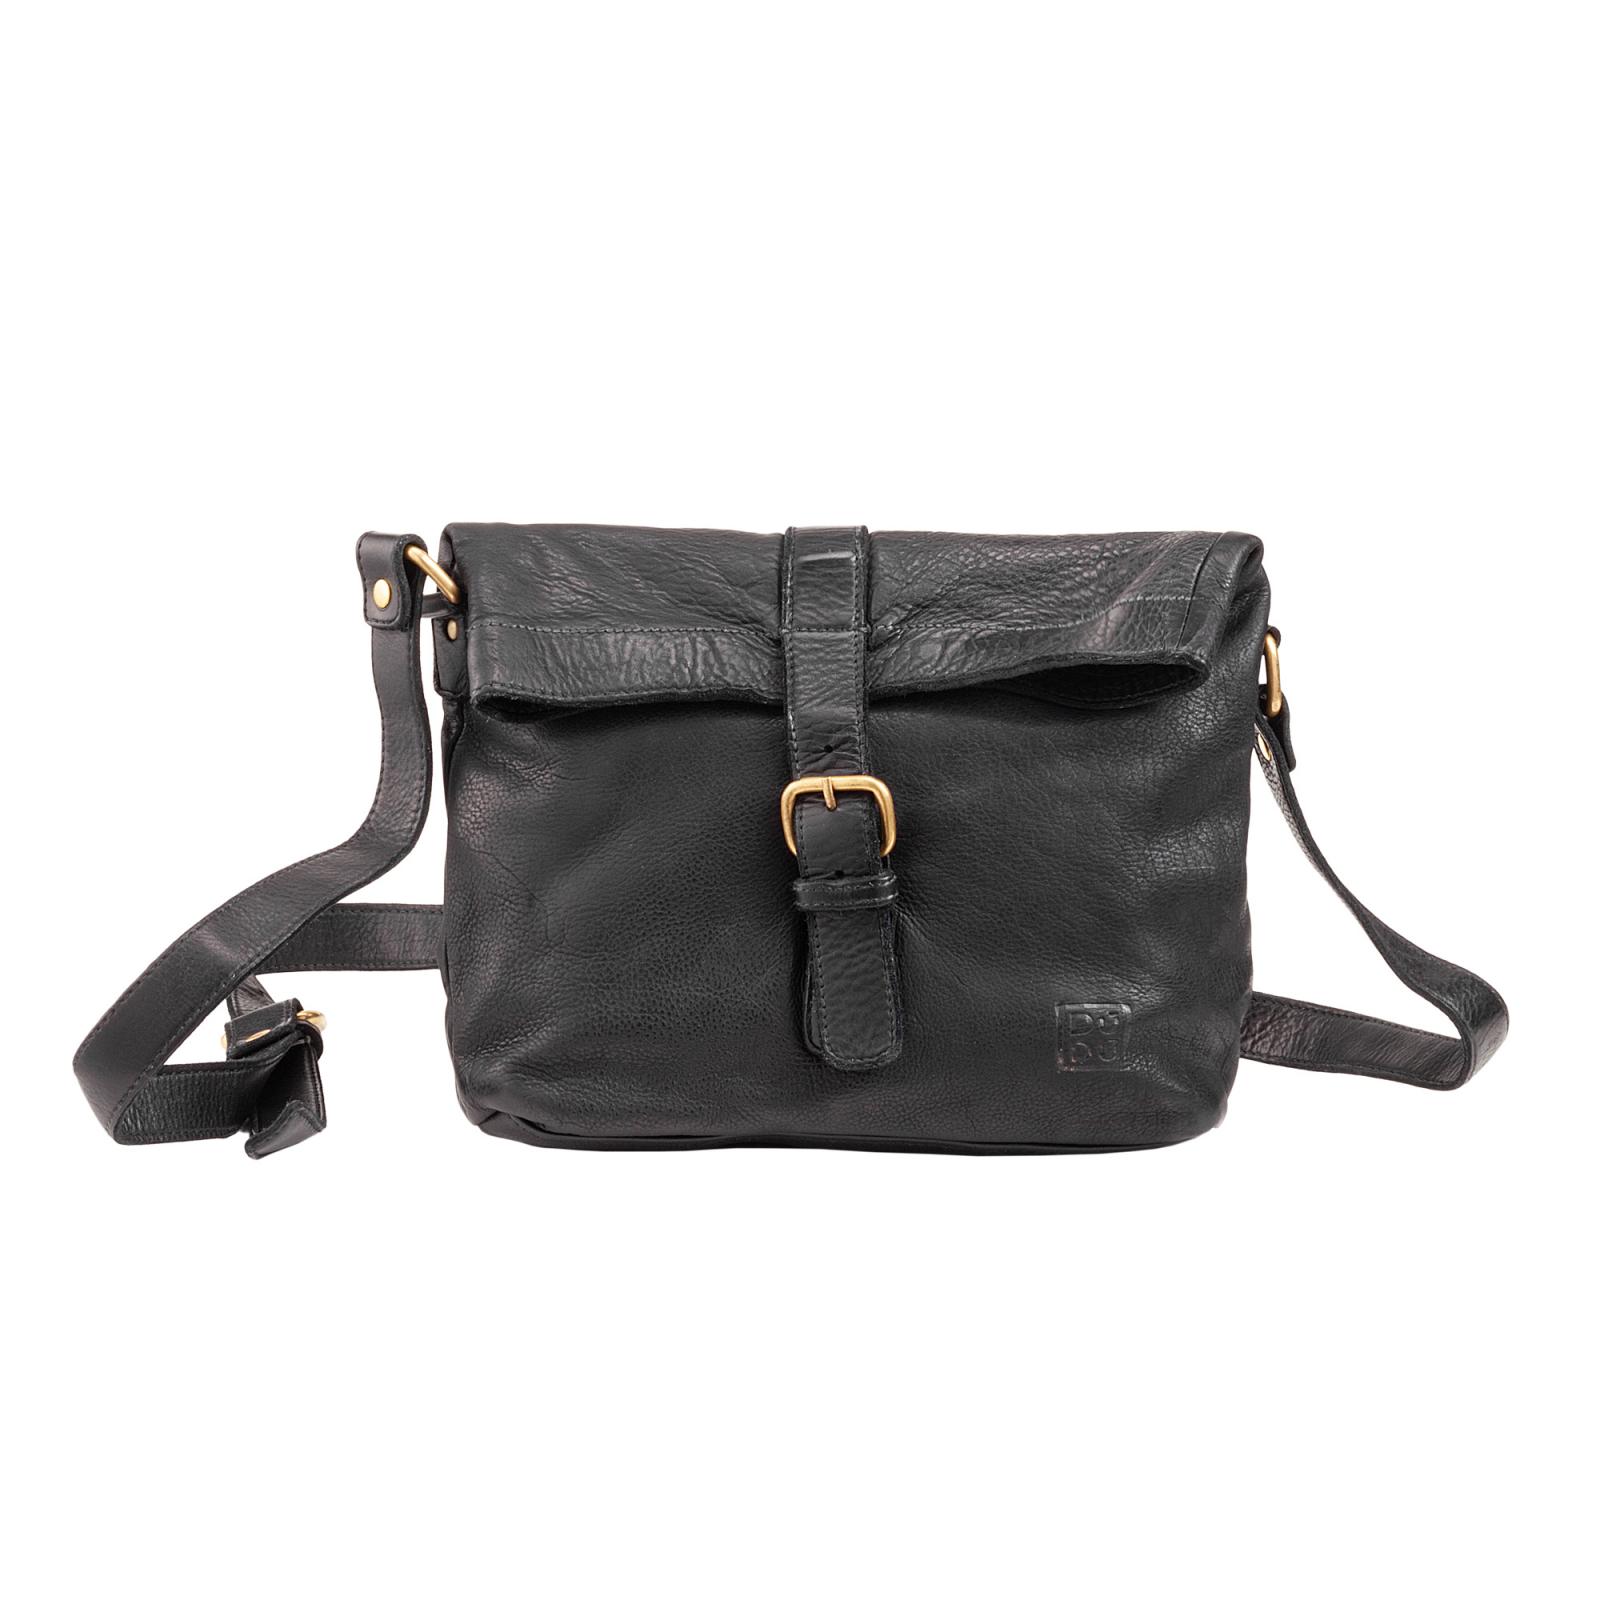 Borse  Donna  Timeless - Mini Bag  - Black Slate